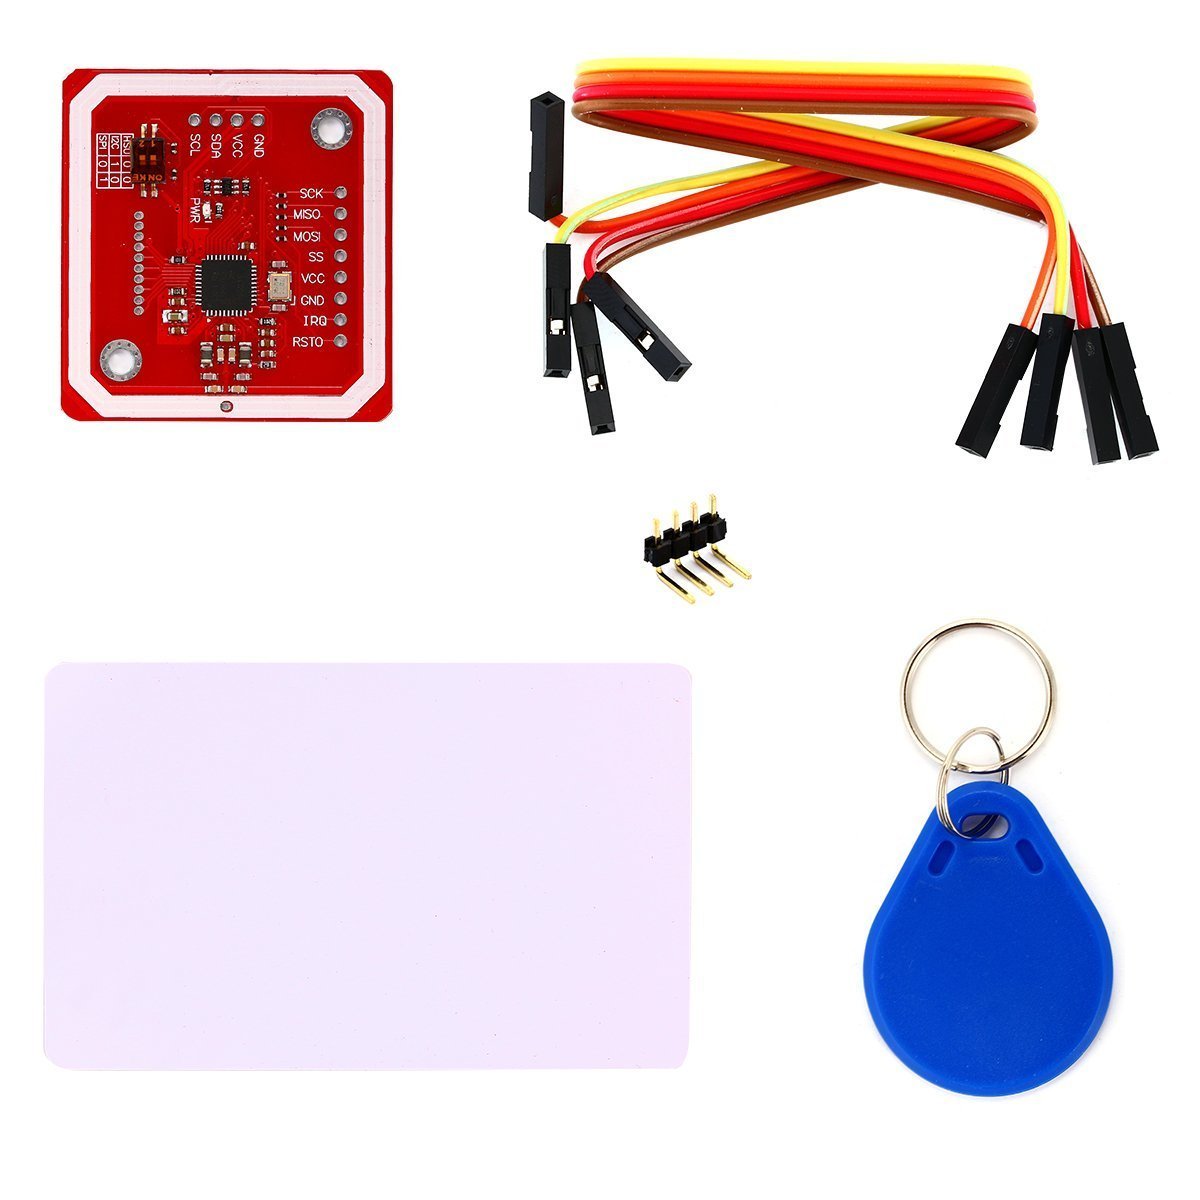 PN532 NFC RFID module for Arduino